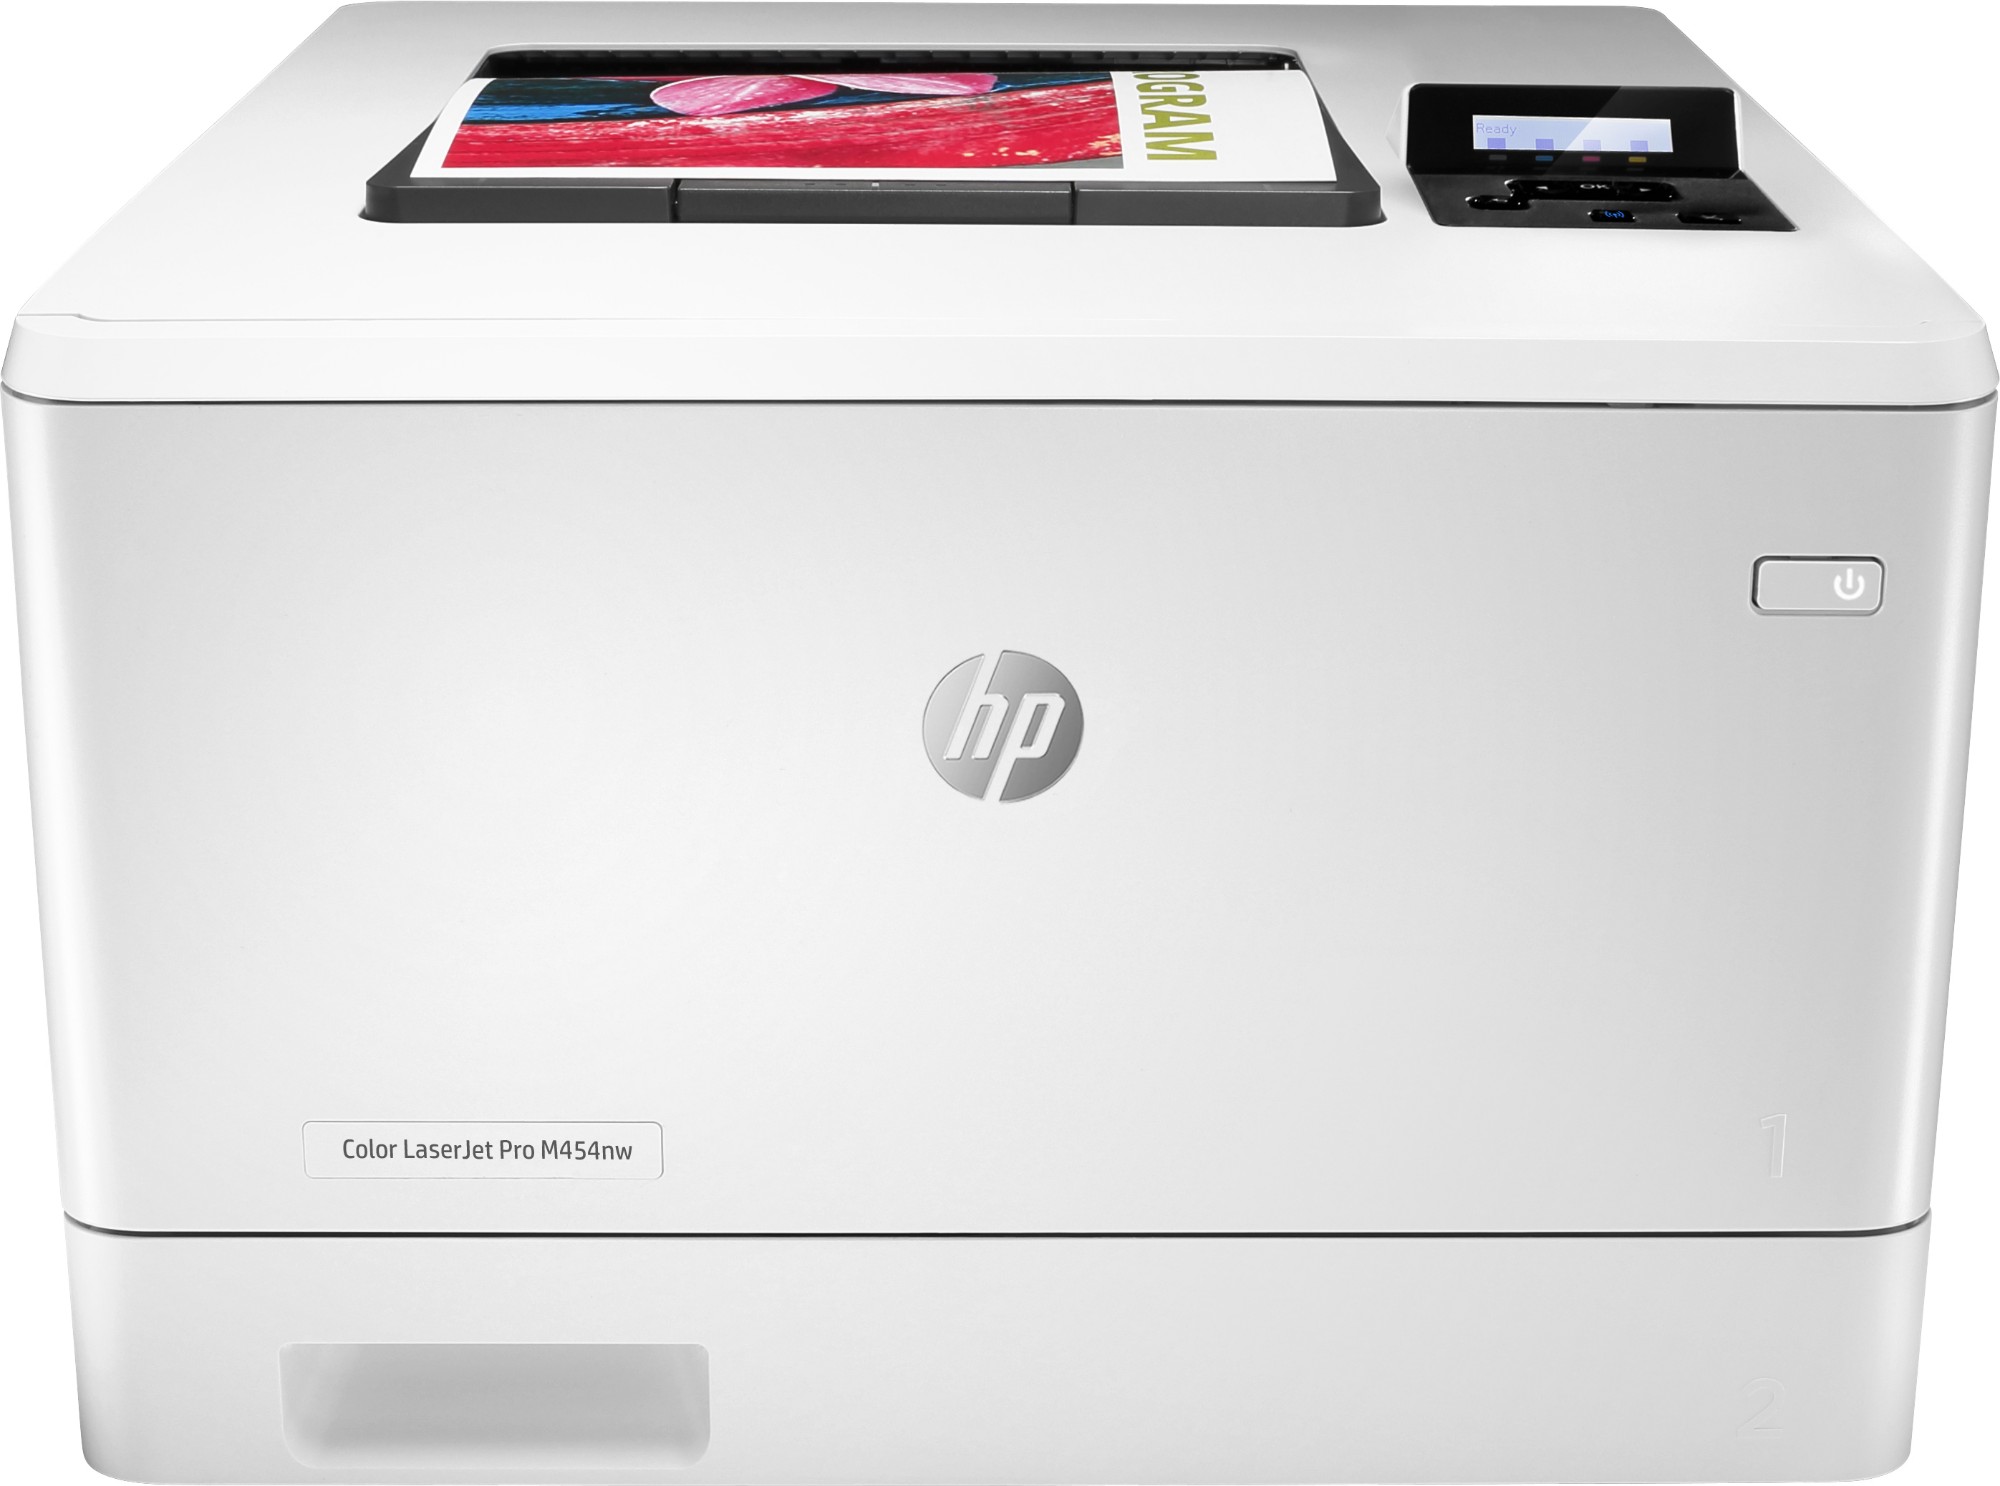 Náplně do tiskárny HP Color LaserJet Pro M454nw